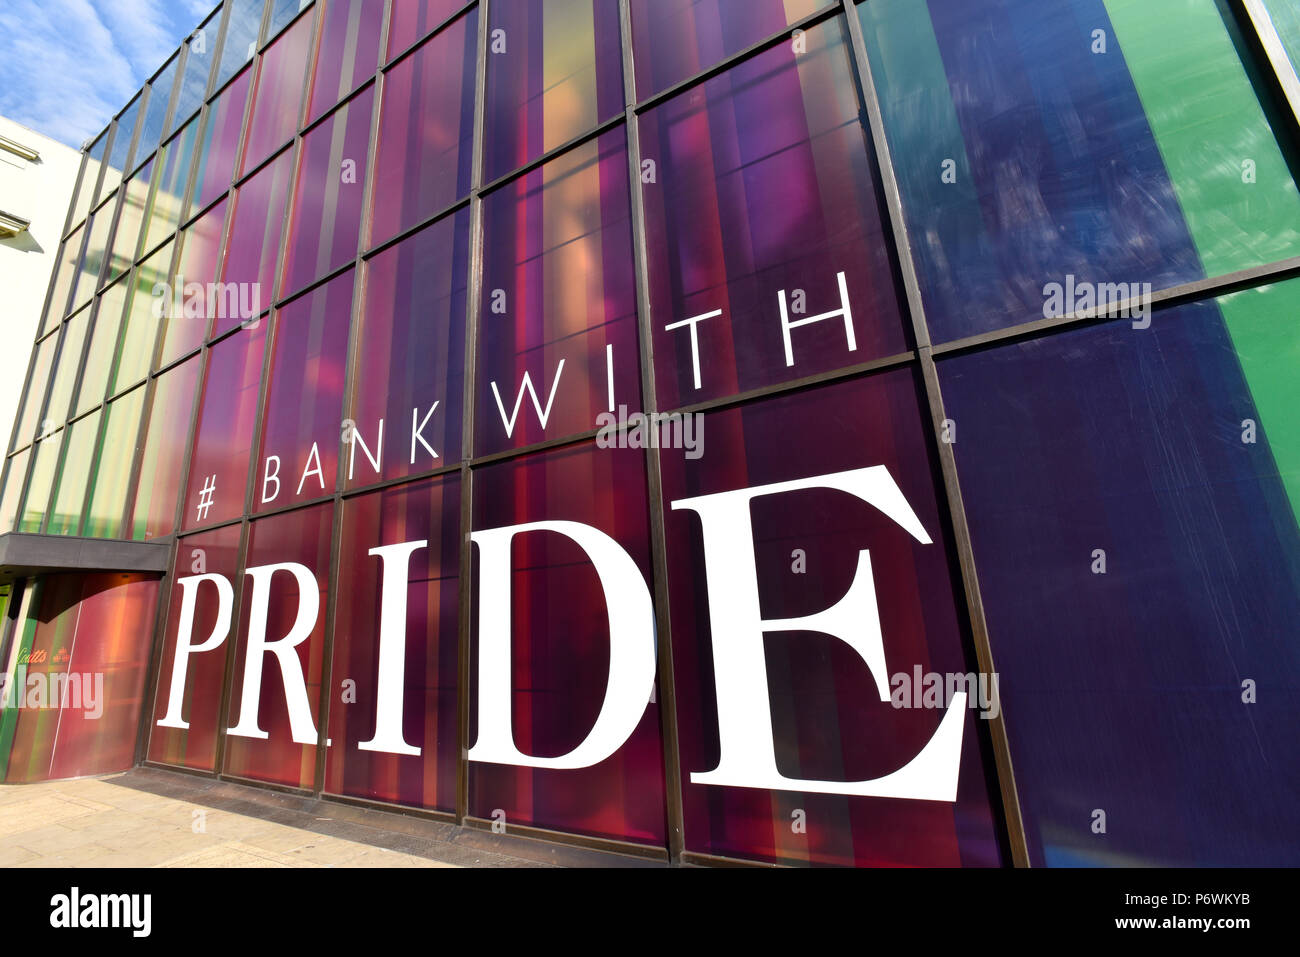 Strand, Londres, Reino Unido. El 03 de julio de 2018. Banco privado Coutts en Strand admite Pride 2018 con ventanas de colores del arco iris. Crédito: Matthew Chattle/Alamy Live News Foto de stock